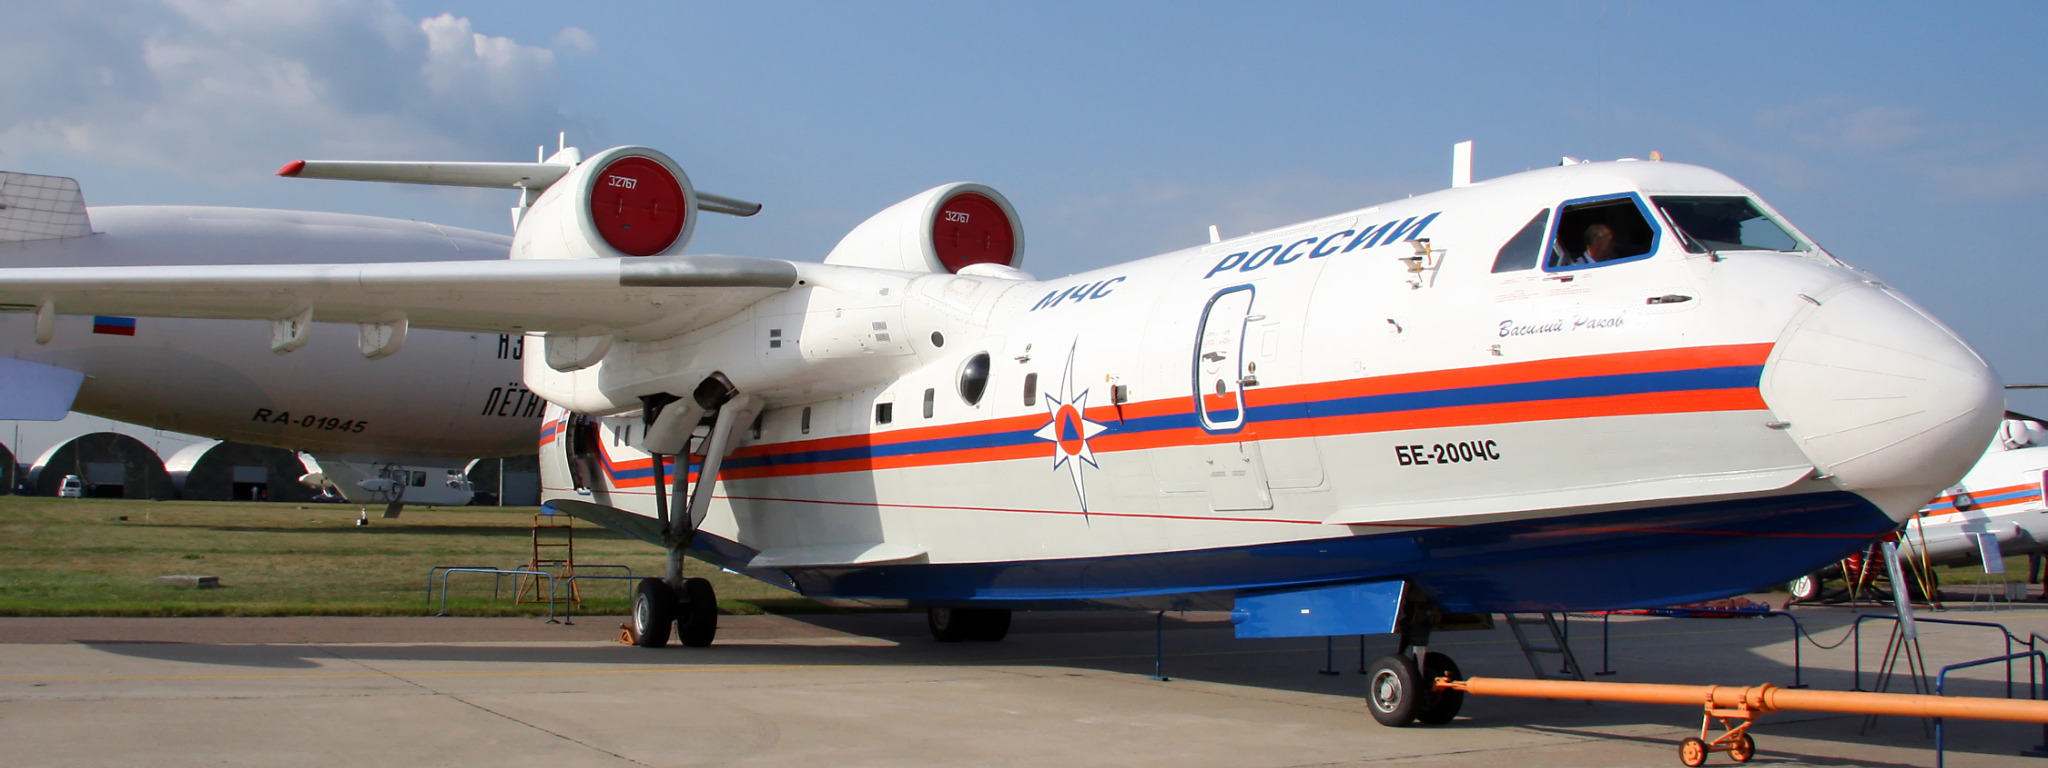 самолёт, Российский, амфибия, Бе-200, на выставке, дирижабль на заднем плане